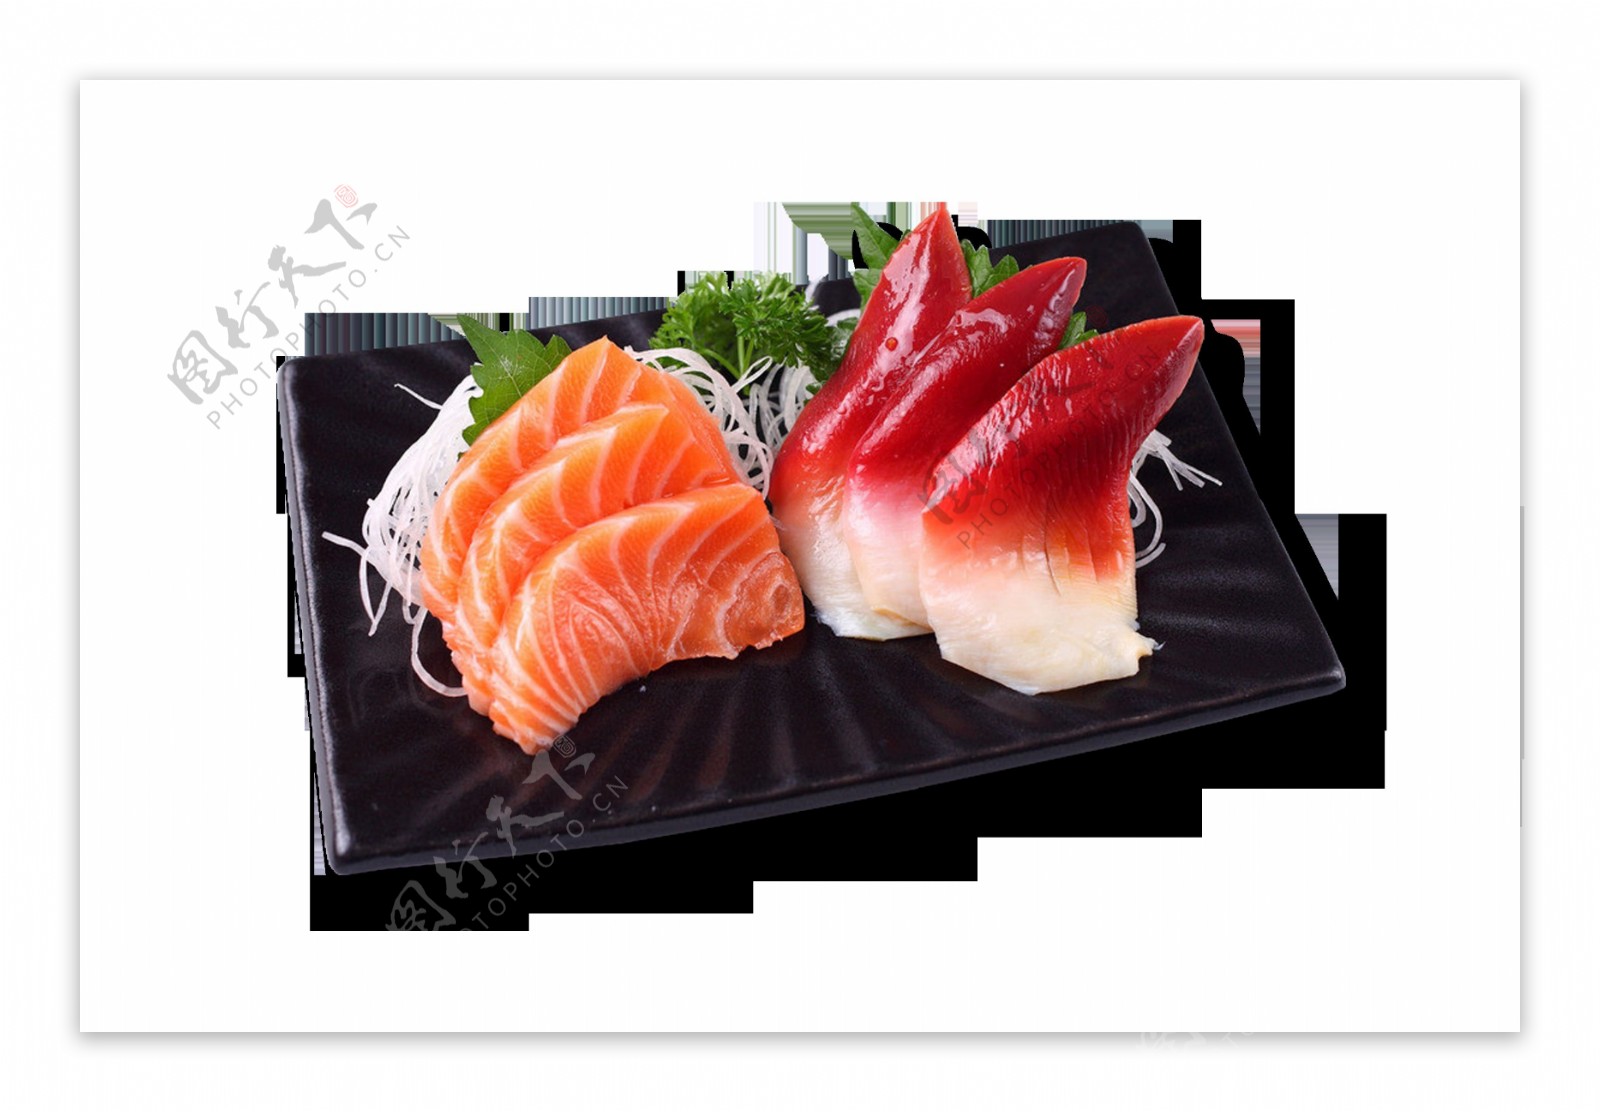 日式刺身寿司料理美食产品实物